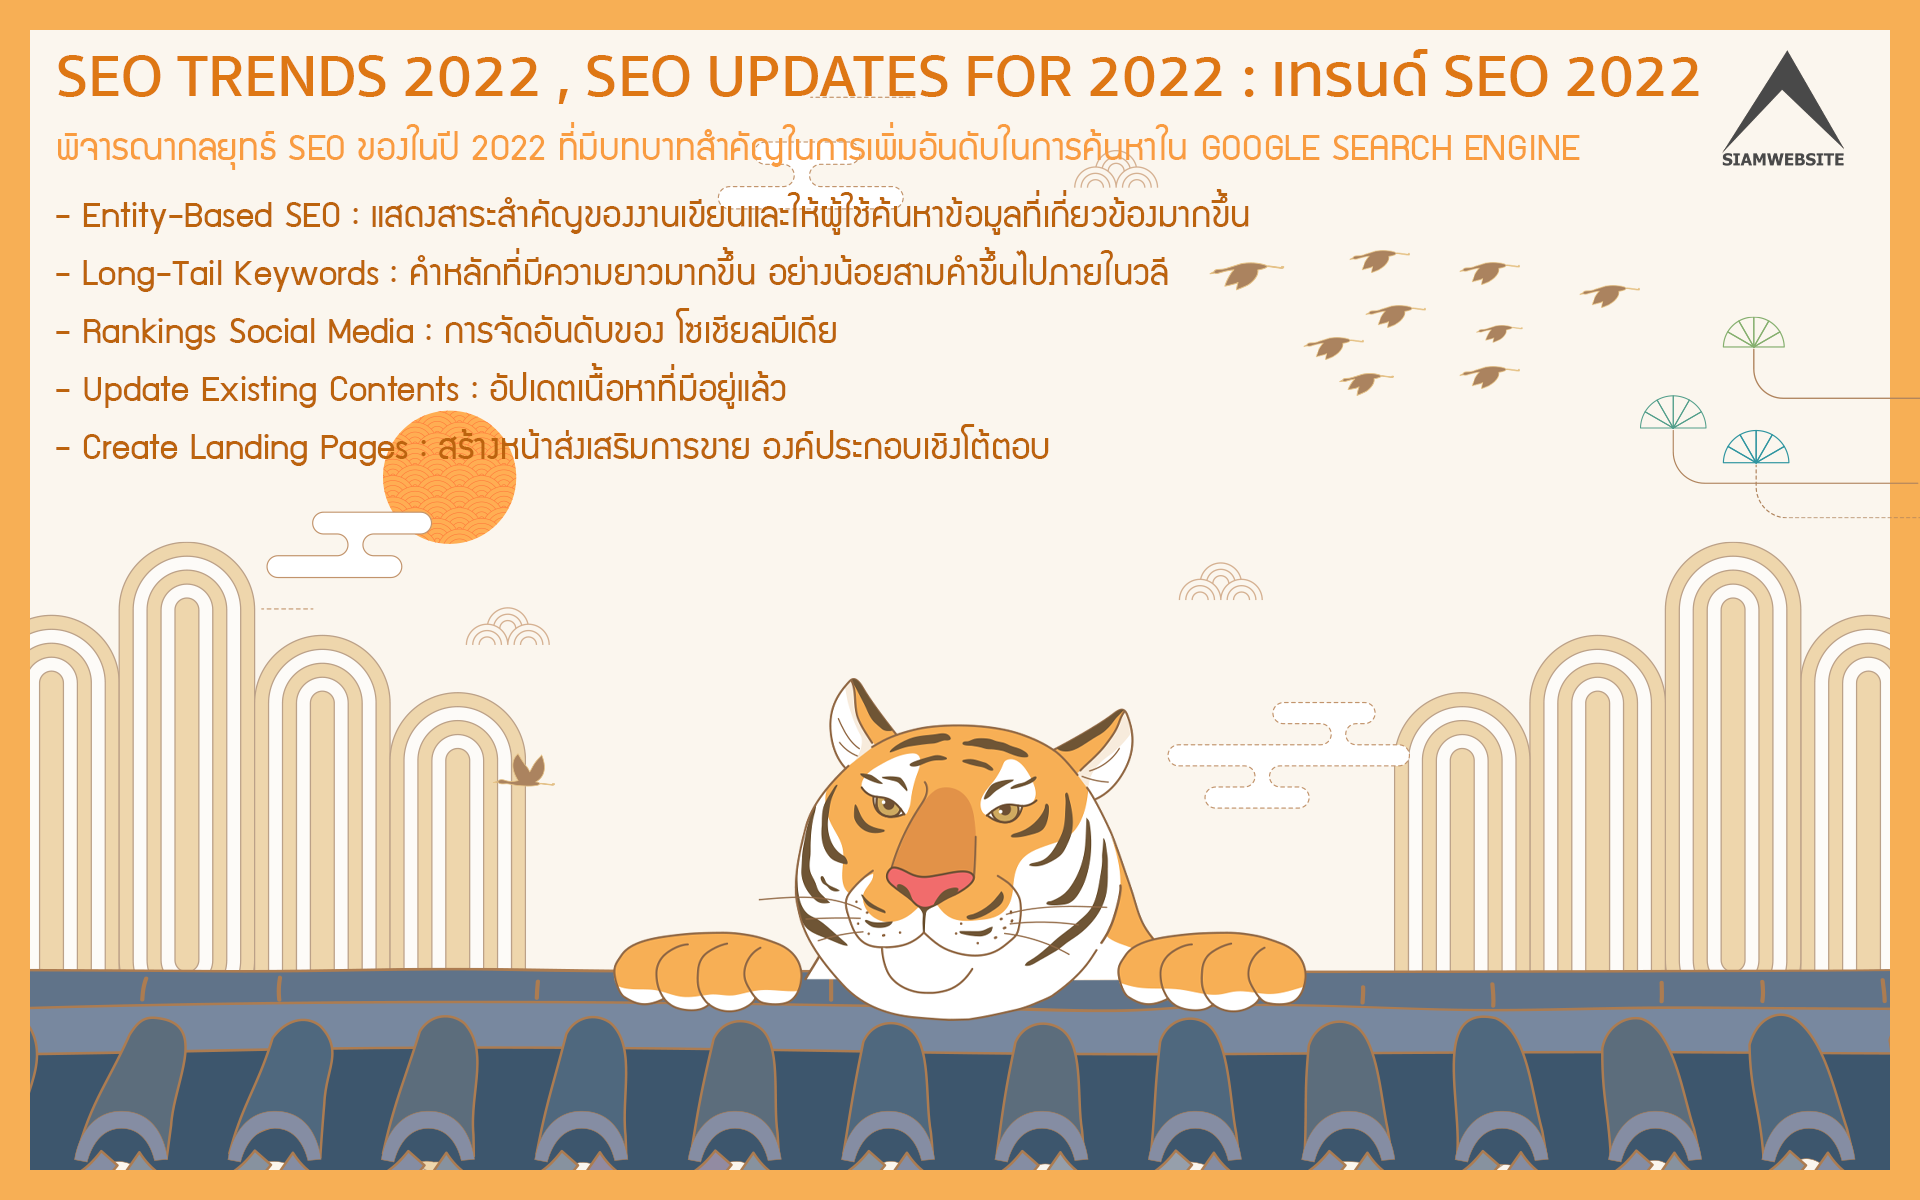 รับทําเว็บไซต์ เว็บขยายสายงาน SEO TRENDS 2022 , SEO UPDATES FOR 2022 : เทรนด์ SEO 2022 | TTT-WEBSITE 